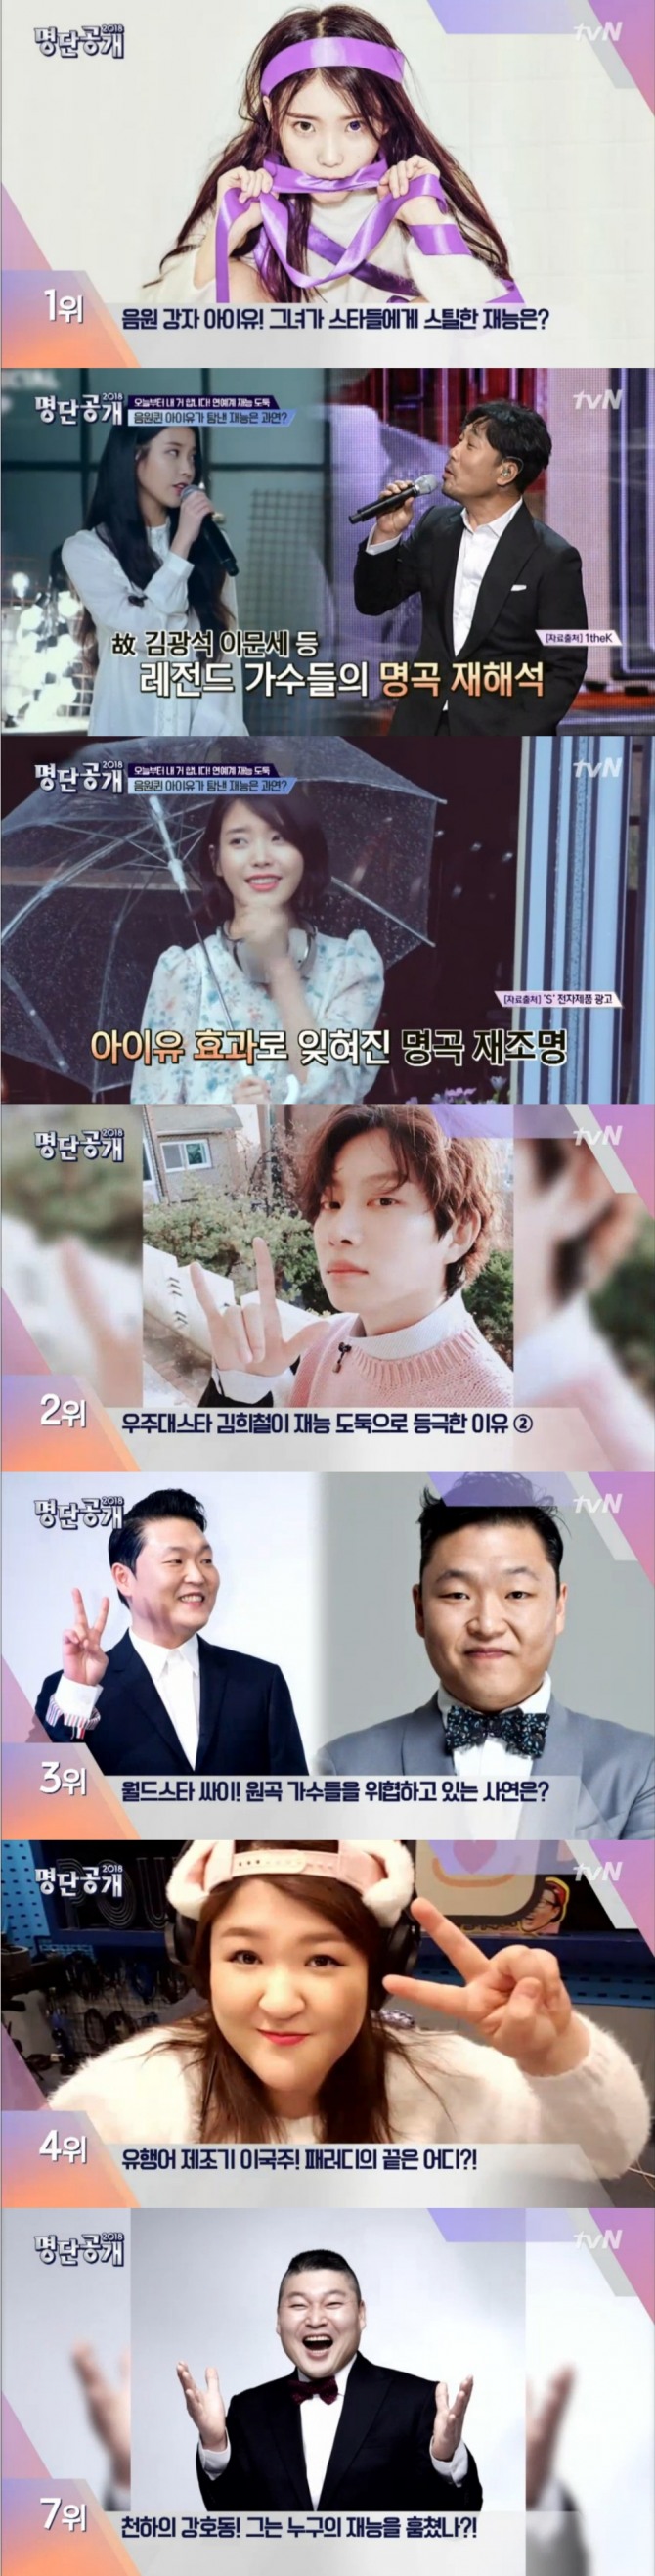 20일 새벽 방송된 tvN '명단공개'에서는 연예계 재능 도둑 스타 순위가 발표된 가운데 아이유 1위, 김희철 2위, 싸이 3위, 이국주 4위, 성시경 5위, 권혁수 6위, 강호동 7위 등으로 이름을 올렸다. 사진=tvN 방송 캡처